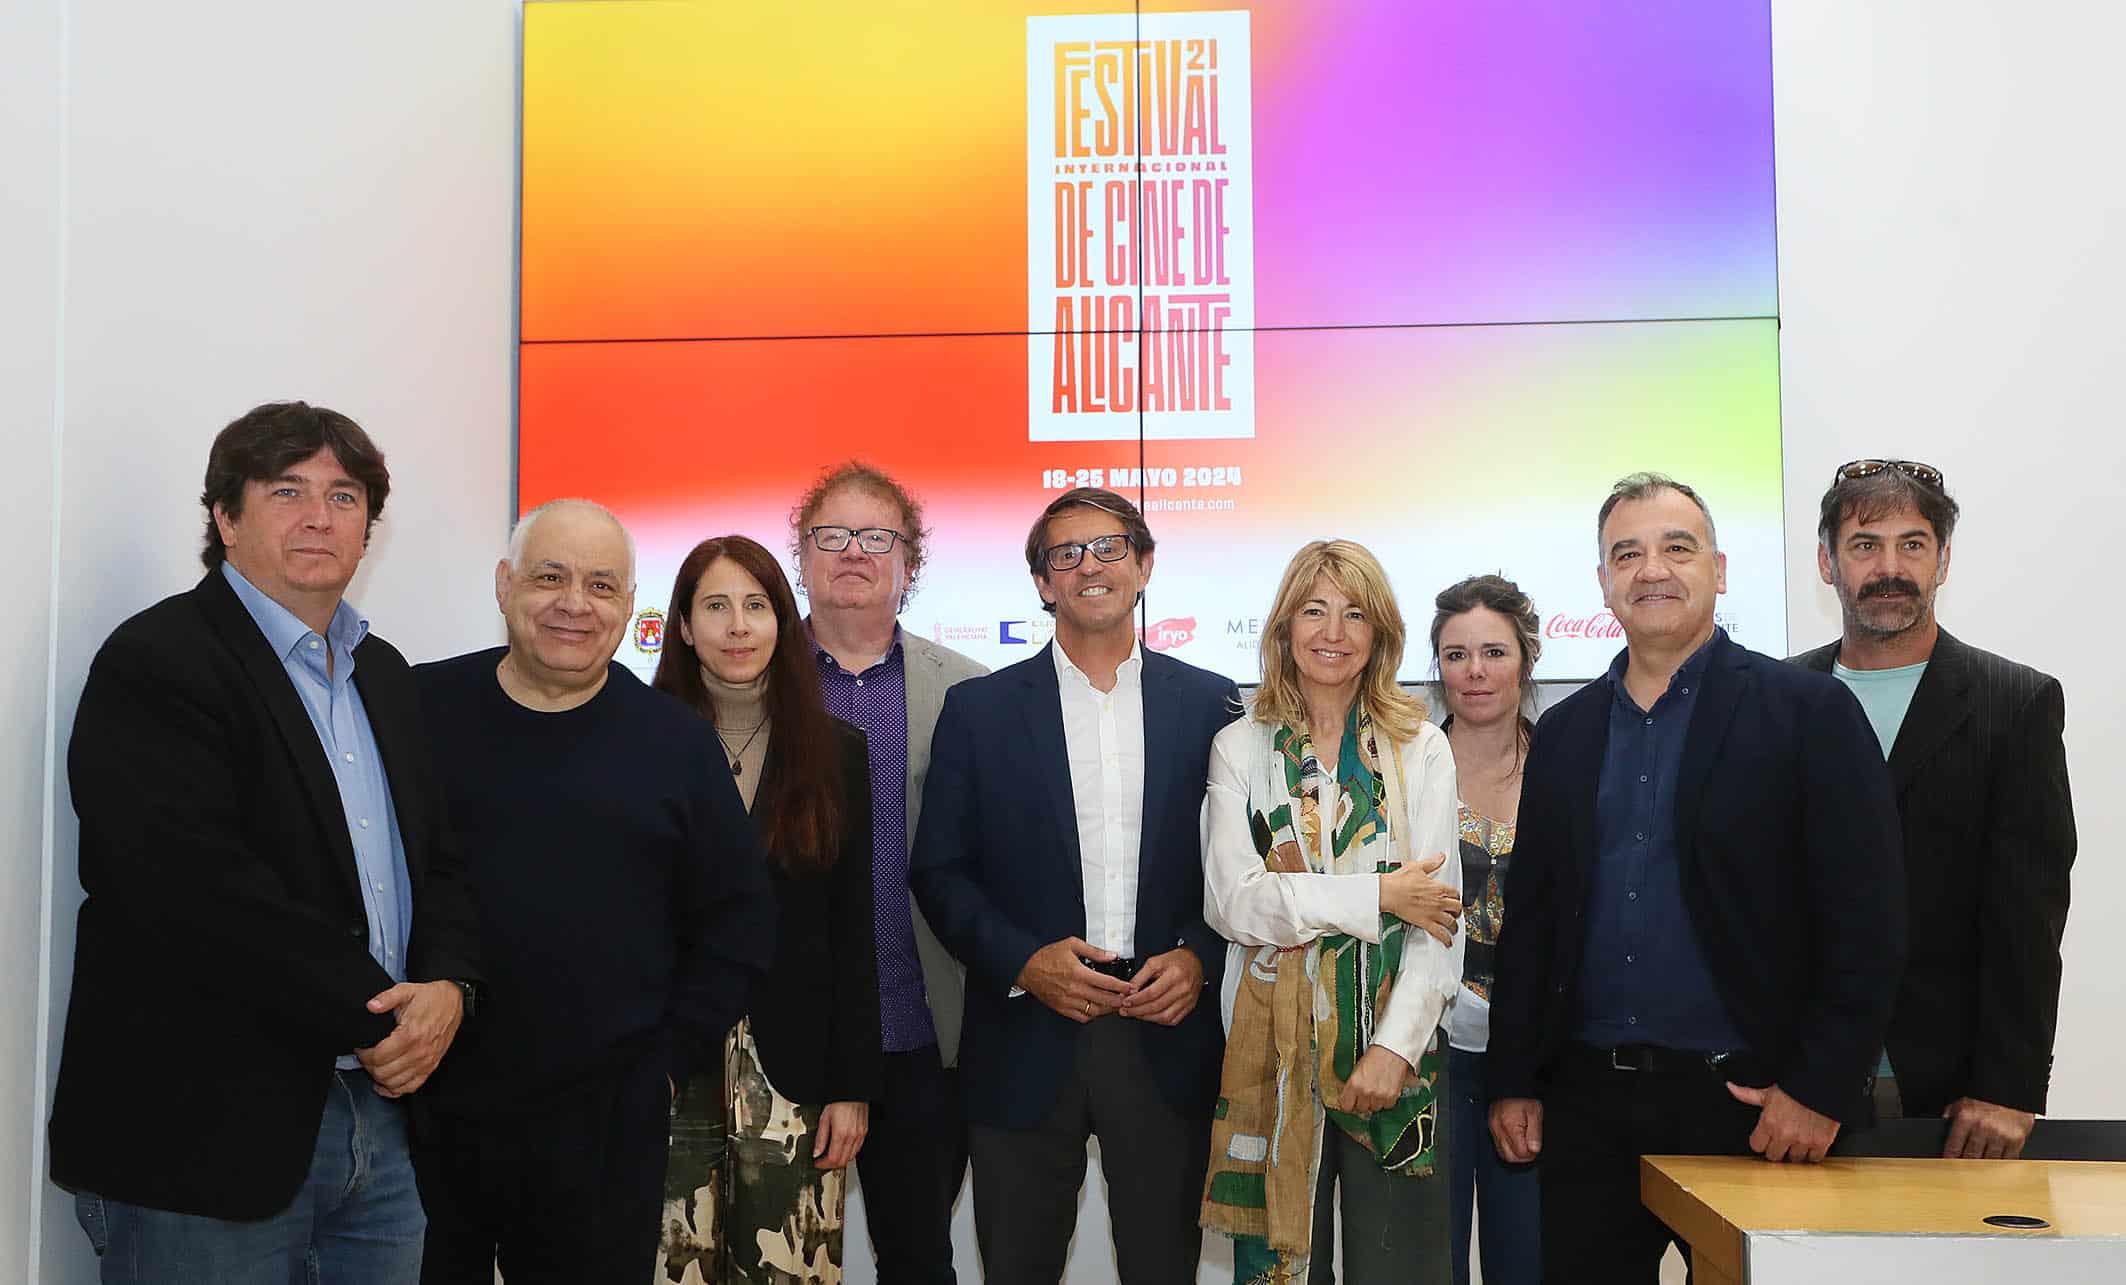 La directora Inés París preside el jurado oficial del Festival de Cine de Alicante impulsado por la Diputación